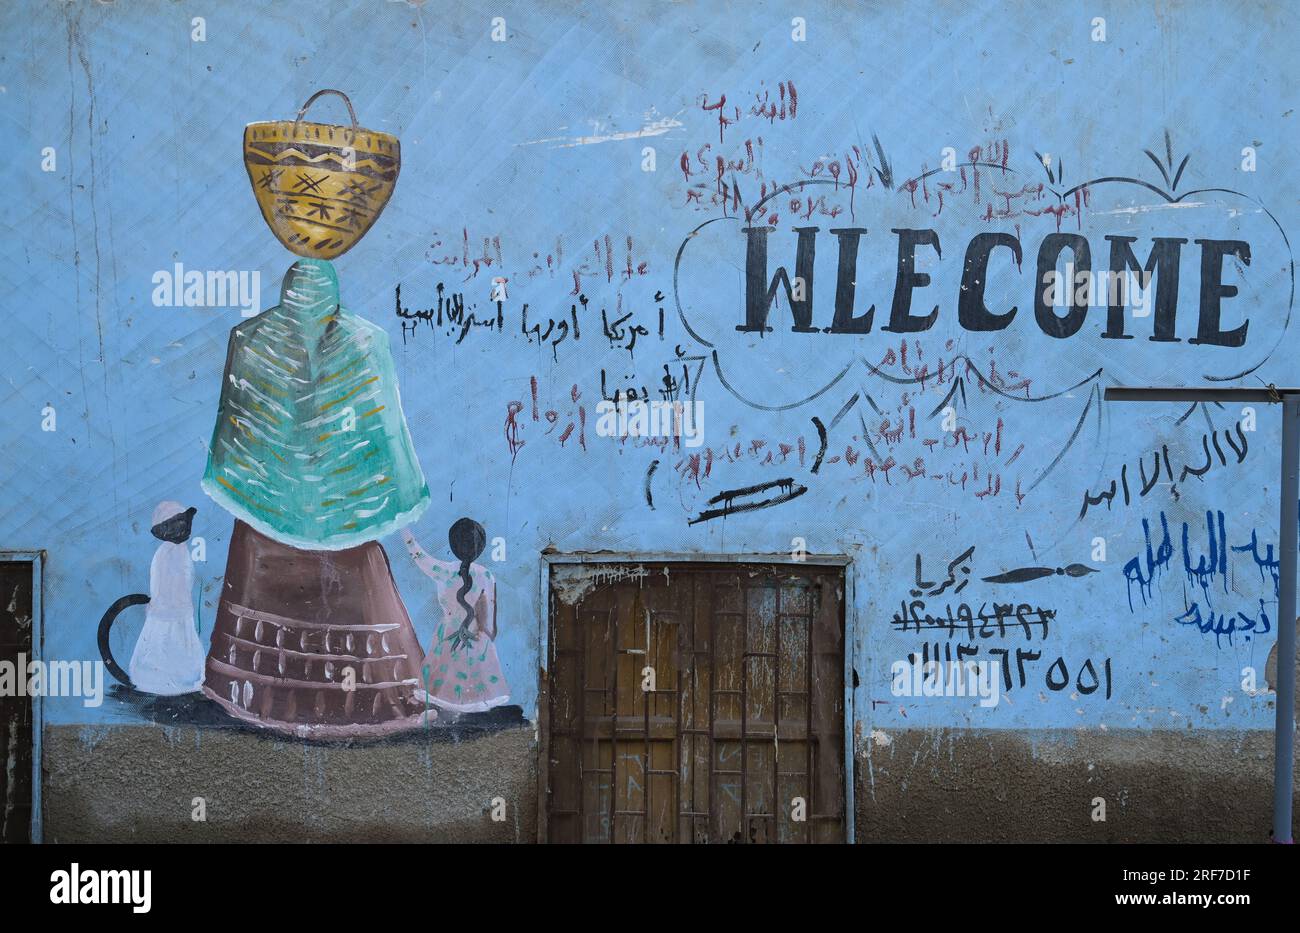 Bemalte Hauswand, Wohnhaus, Schreibfehler, englisch, nubisches Dorf, Nilinsel Elephantine, Assuan, Ägypten Stock Photo